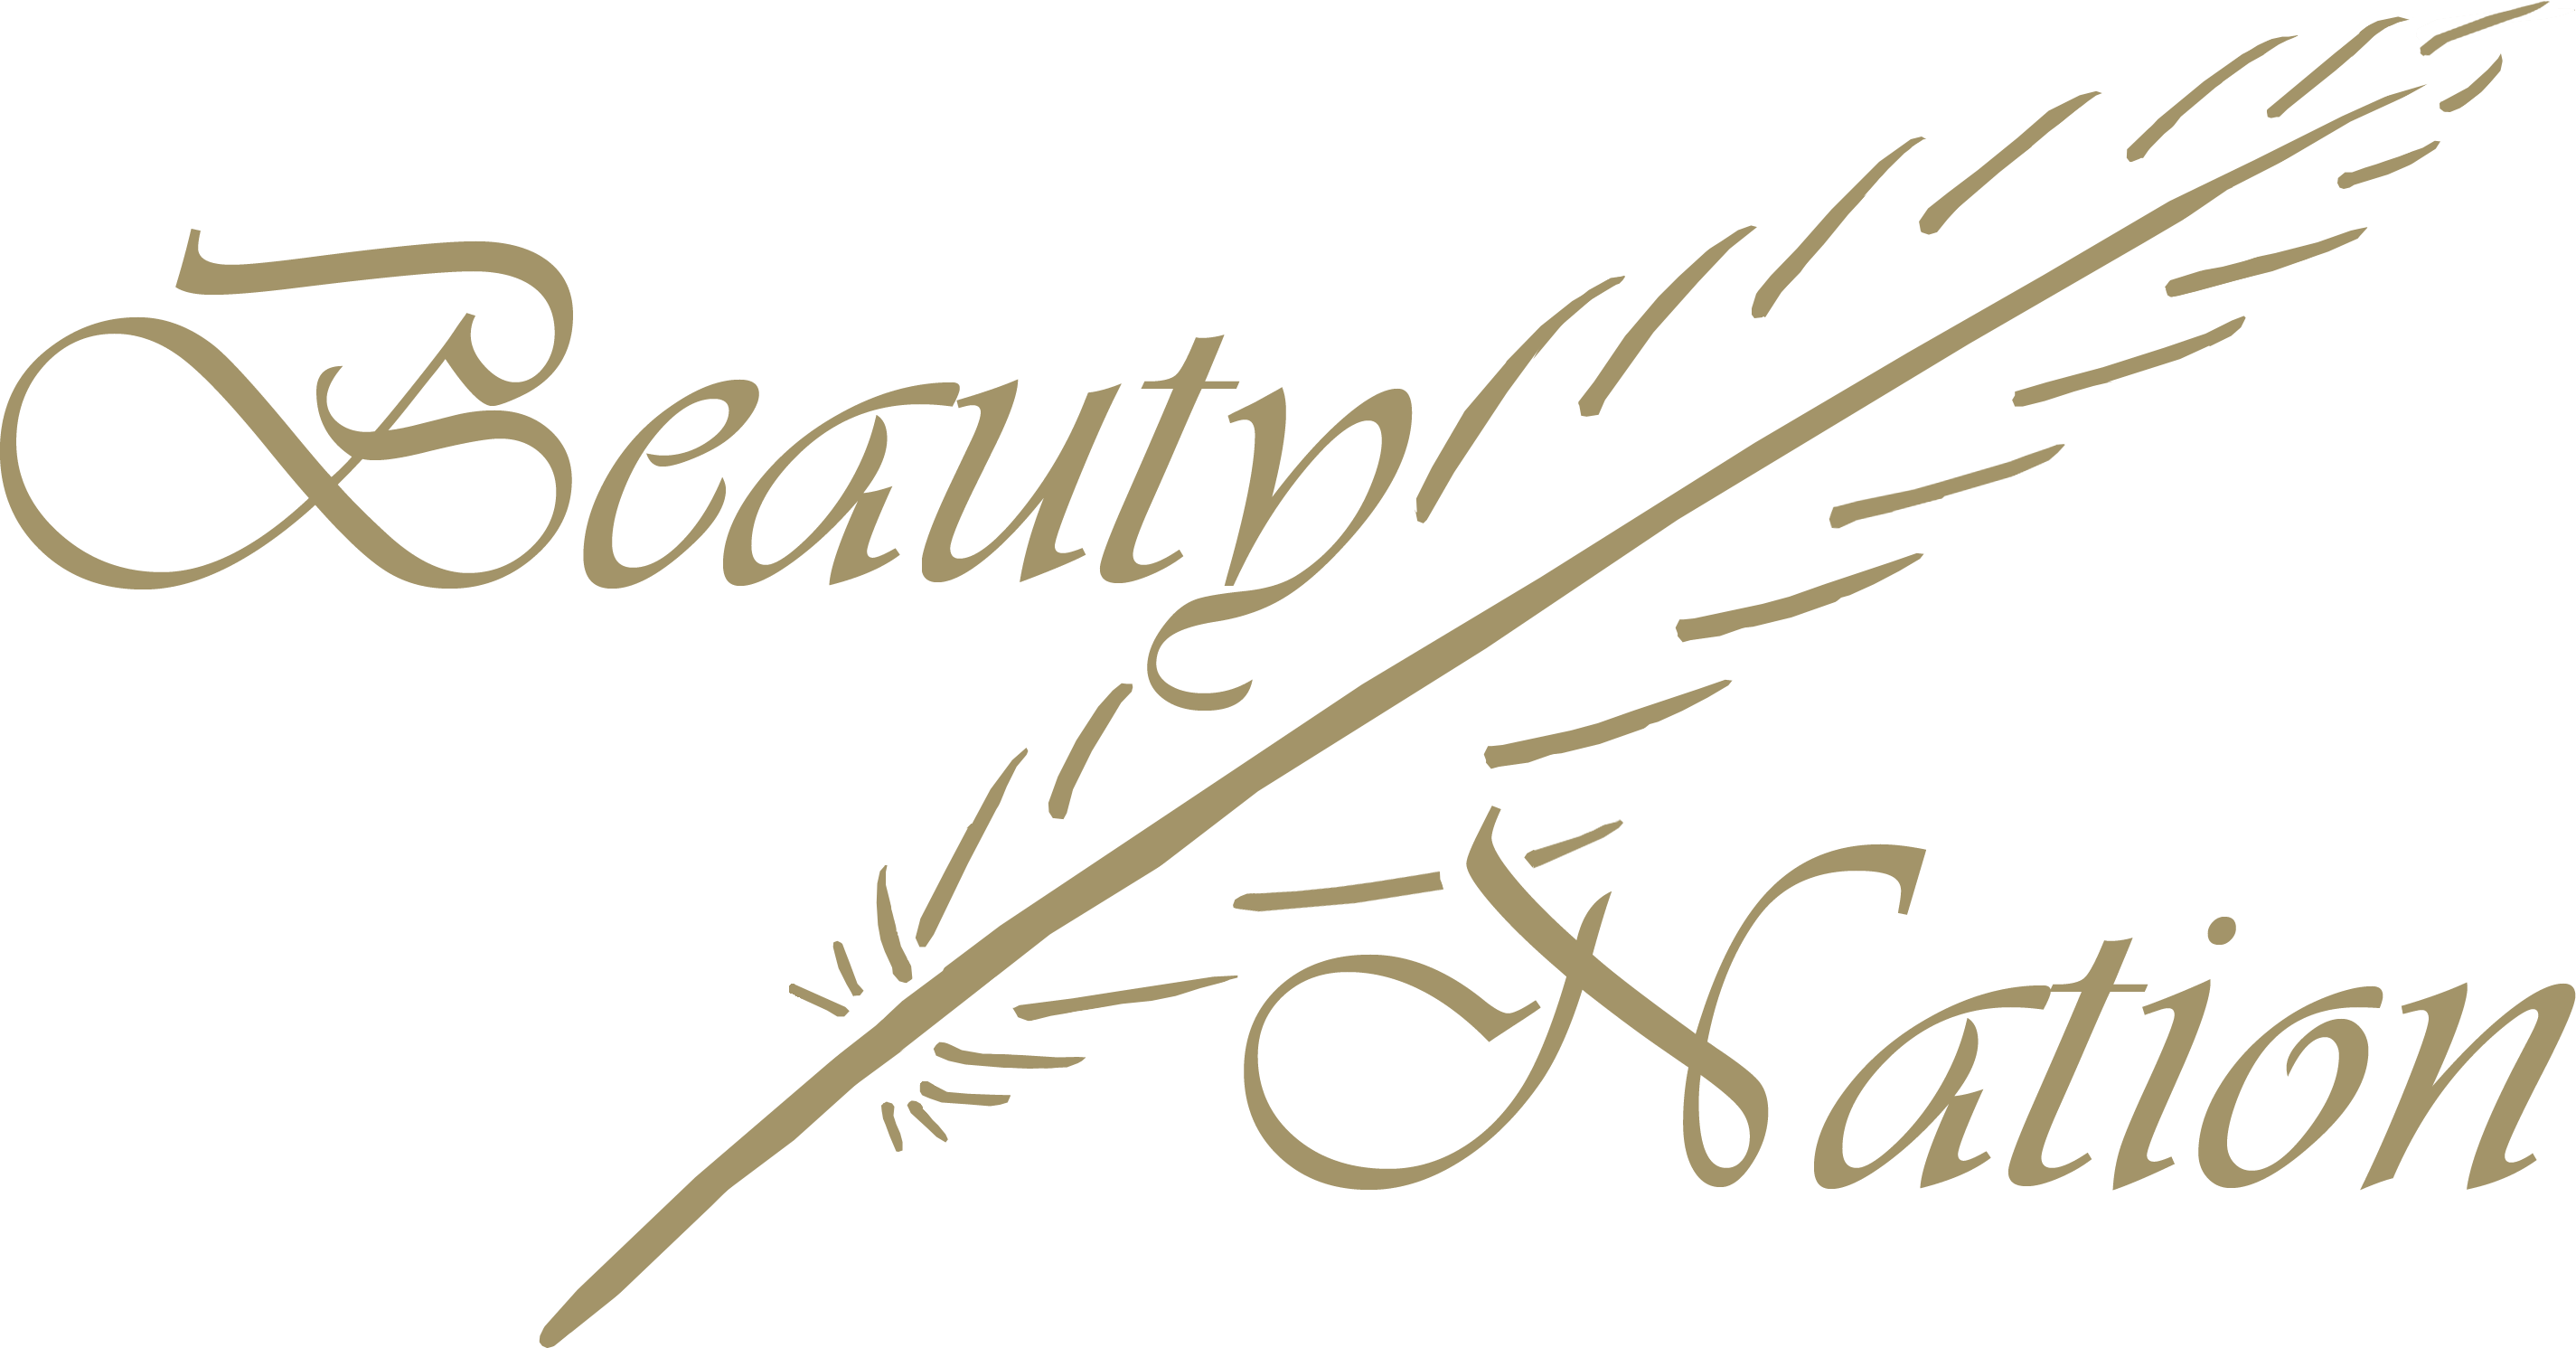 The Beauty Nation Pte. Ltd.